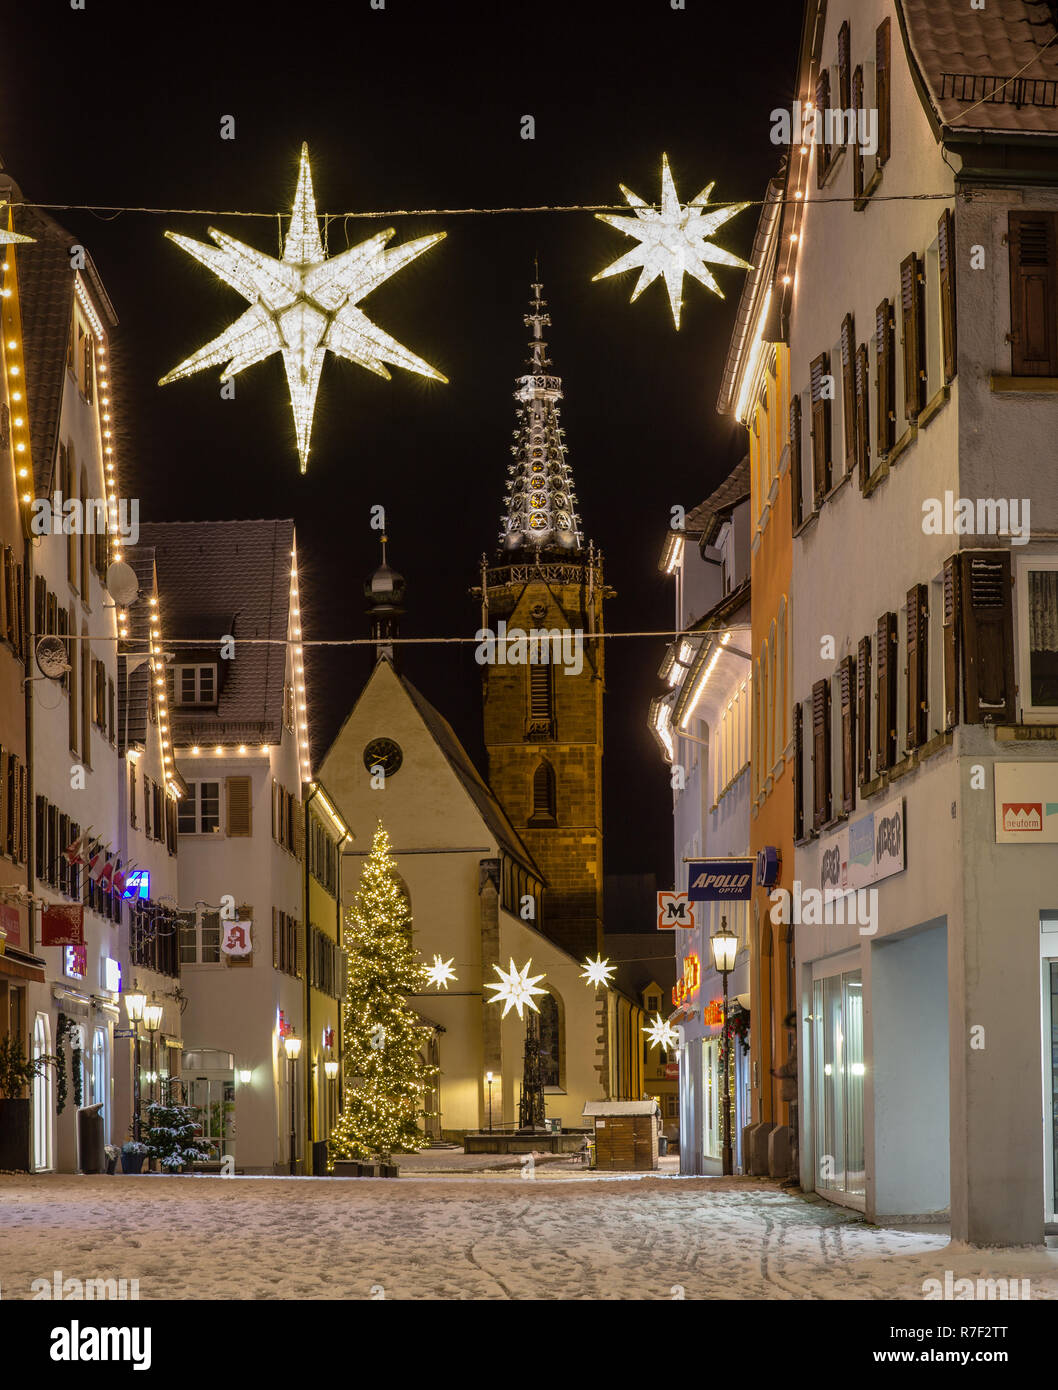 Weihnachtsbeleuchtung in der Stadt Stockfotografie - Alamy